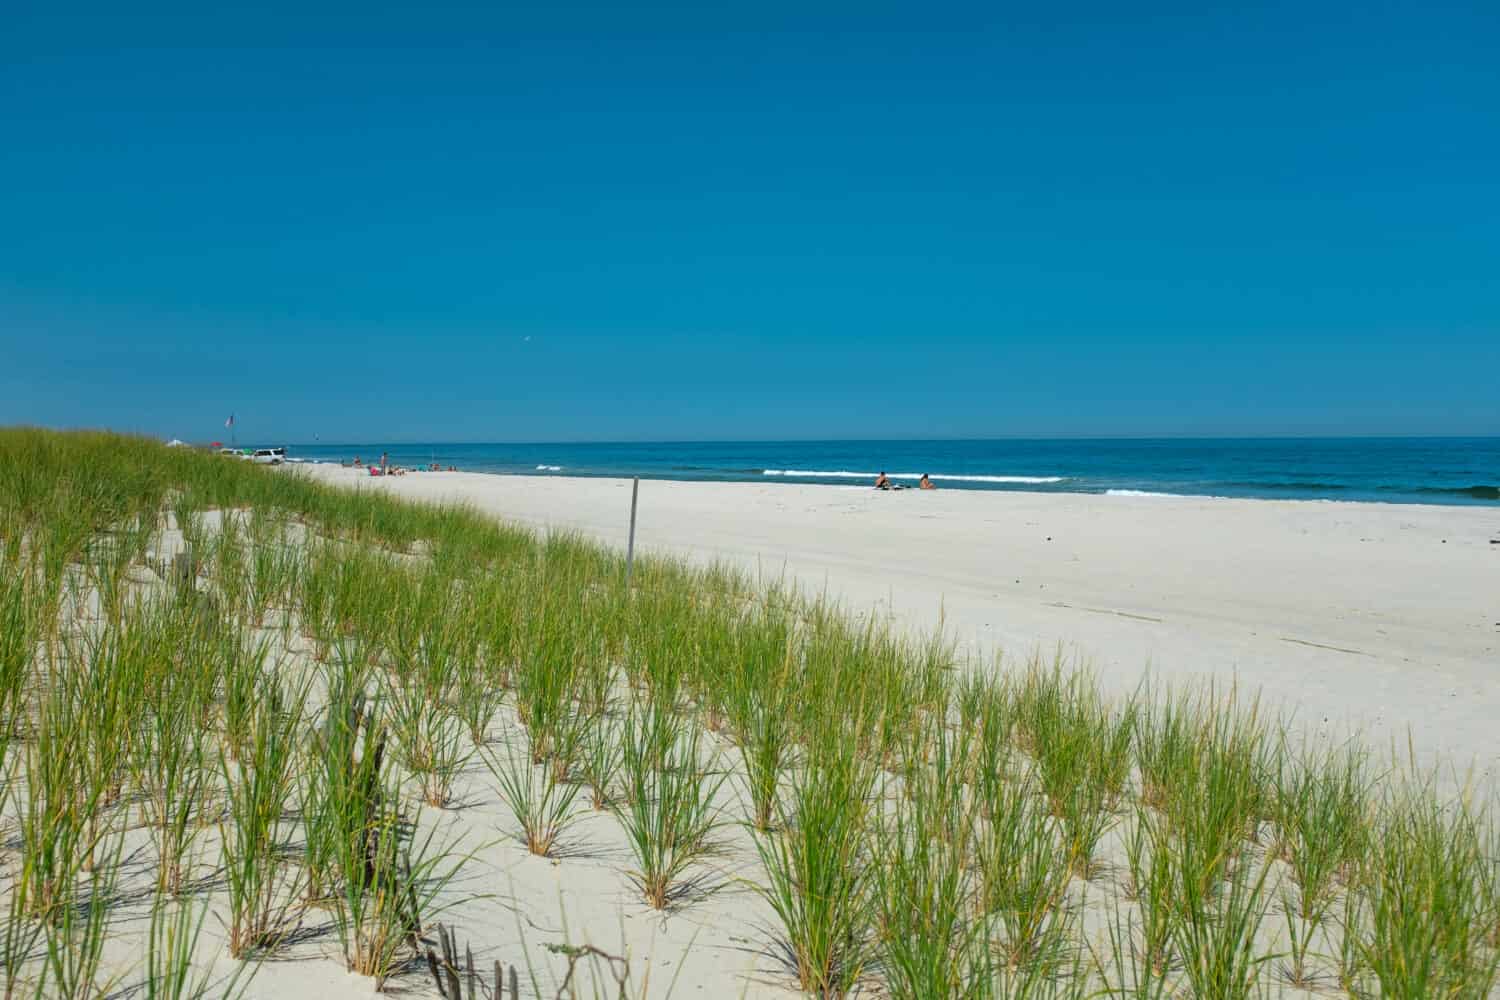 Beachgrass americano appena piantato nelle dune di sabbia dell'Island Beach State Park, New Jersey, con l'Oceano Atlantico sullo sfondo in una calda giornata estiva